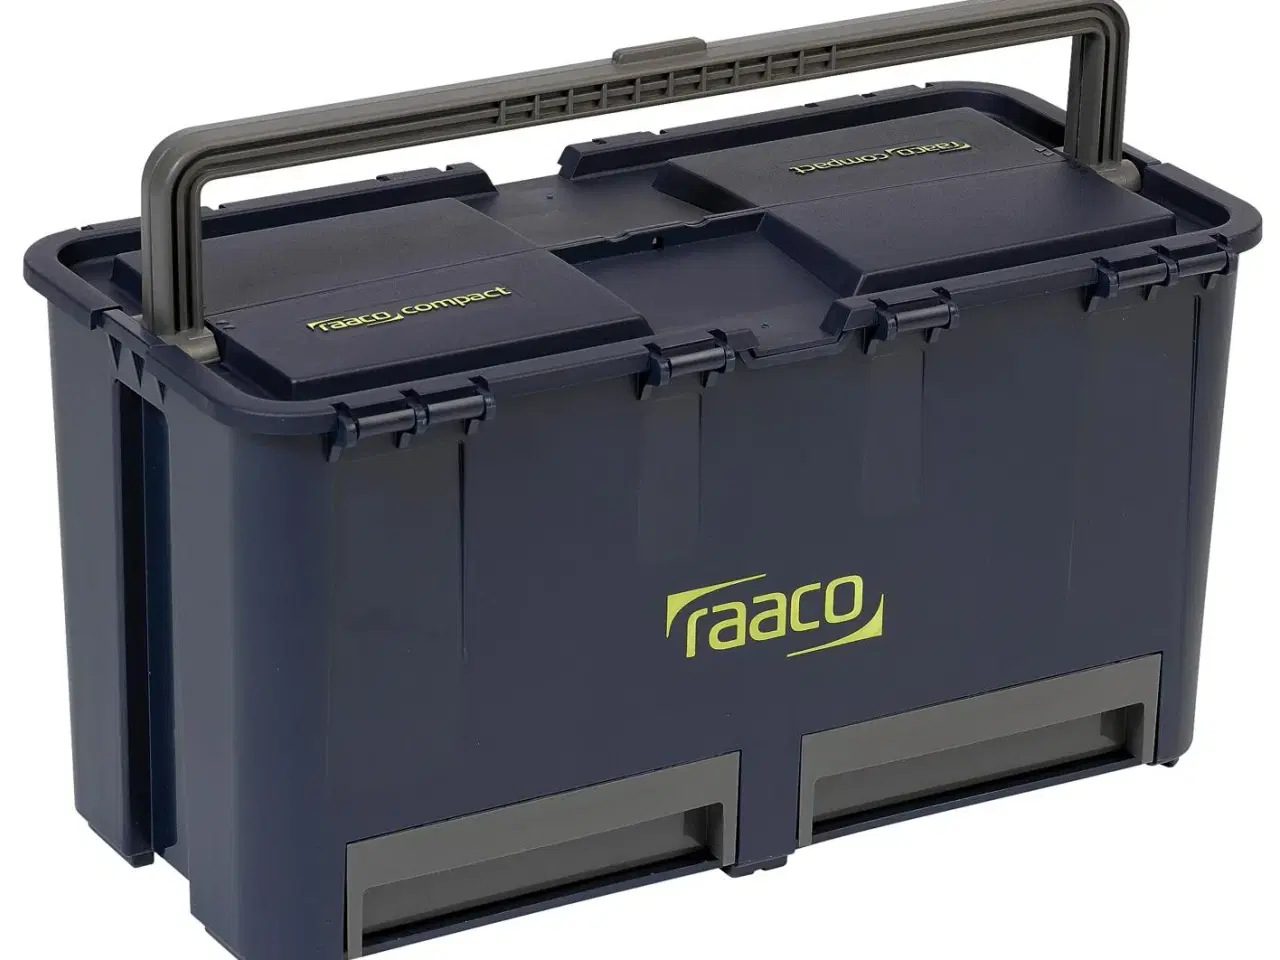 Billede 1 - Raaco, Compact 27 værktøjskasse